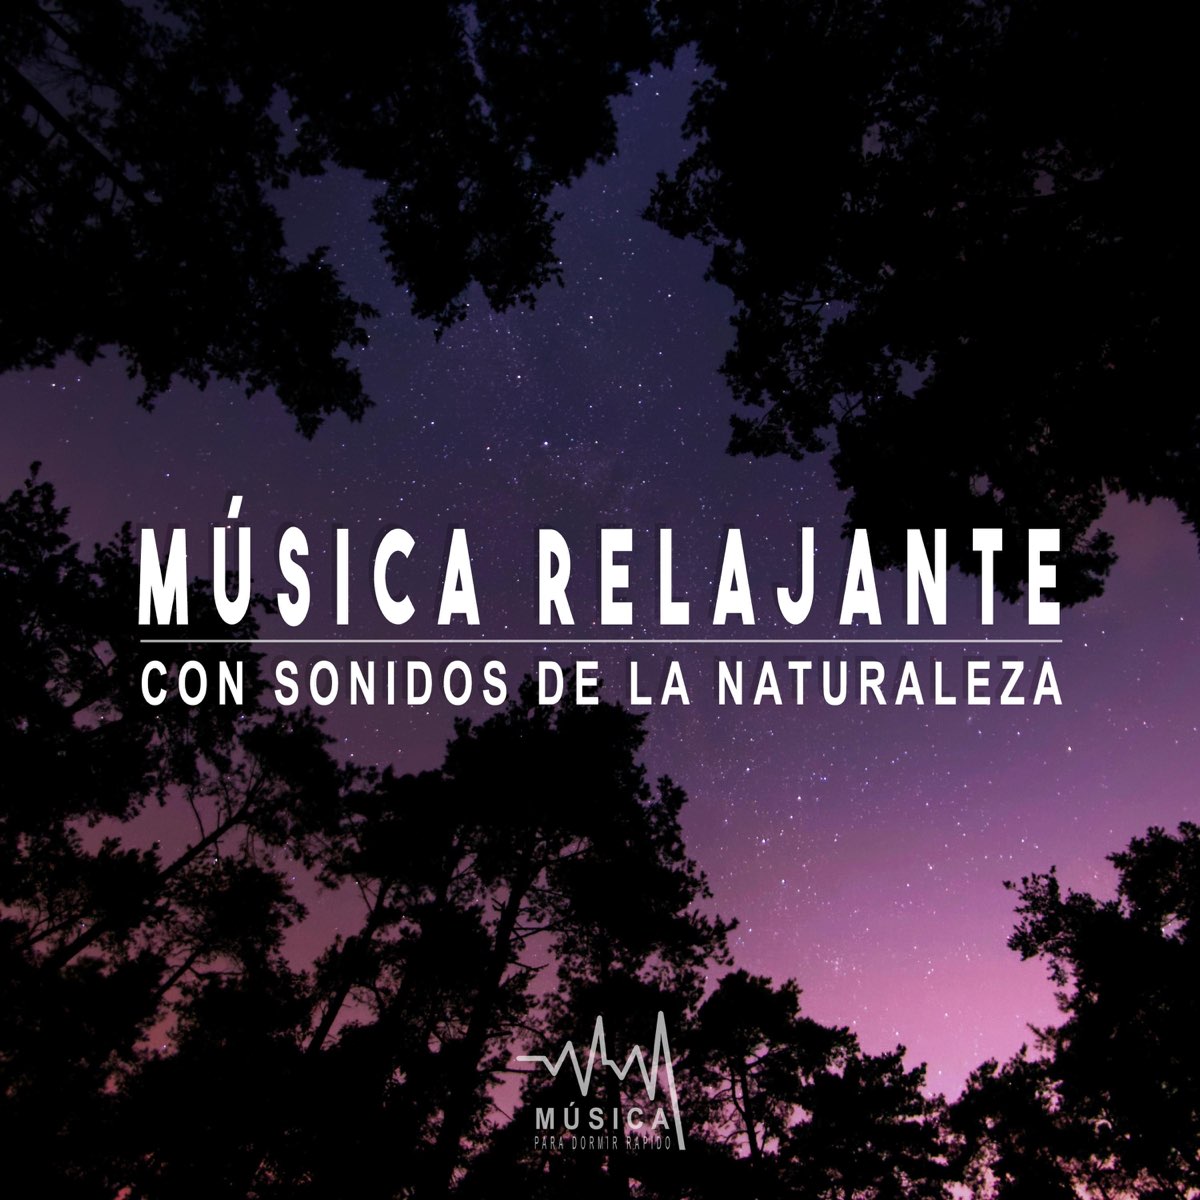 Música Relajante con Sonidos de Naturaleza - Álbum de Edu Cingo - Apple  Music